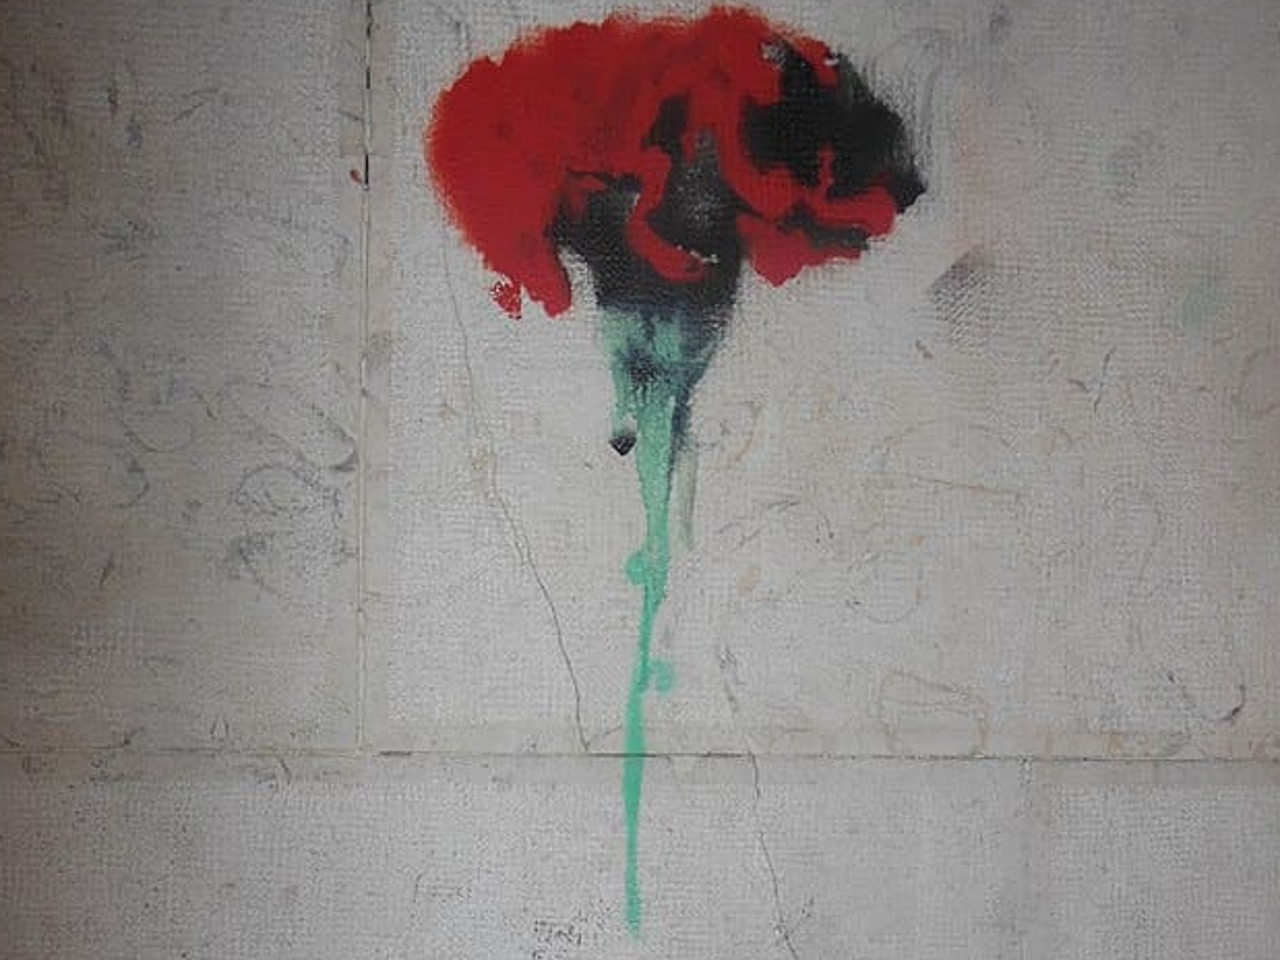 Dessin d'œillet au pochoir sur un mur commémorant le 25 avril 1974, révolution portugaise. Inscription "Fascismo Nunca Mais".